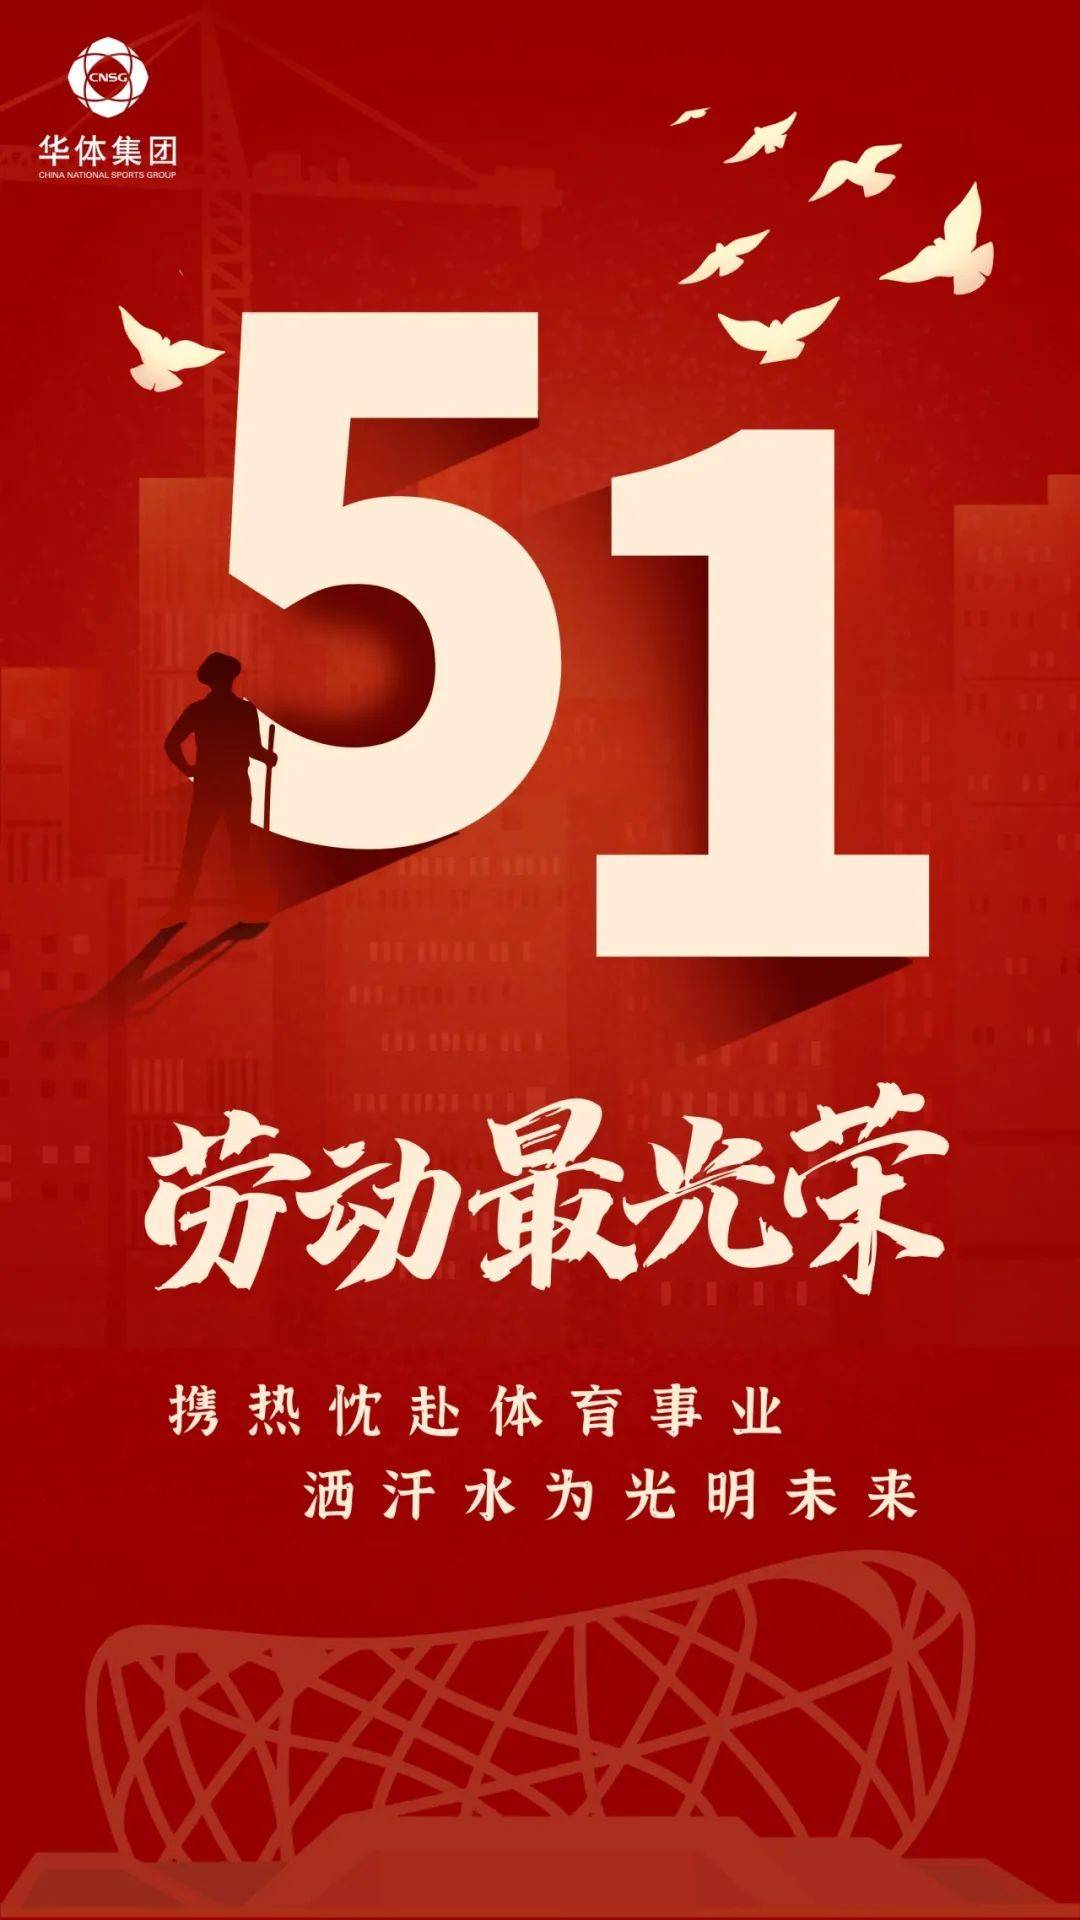 劳动成就梦想 奋斗谱写华章丨华体集团祝大家五一劳动节快乐!